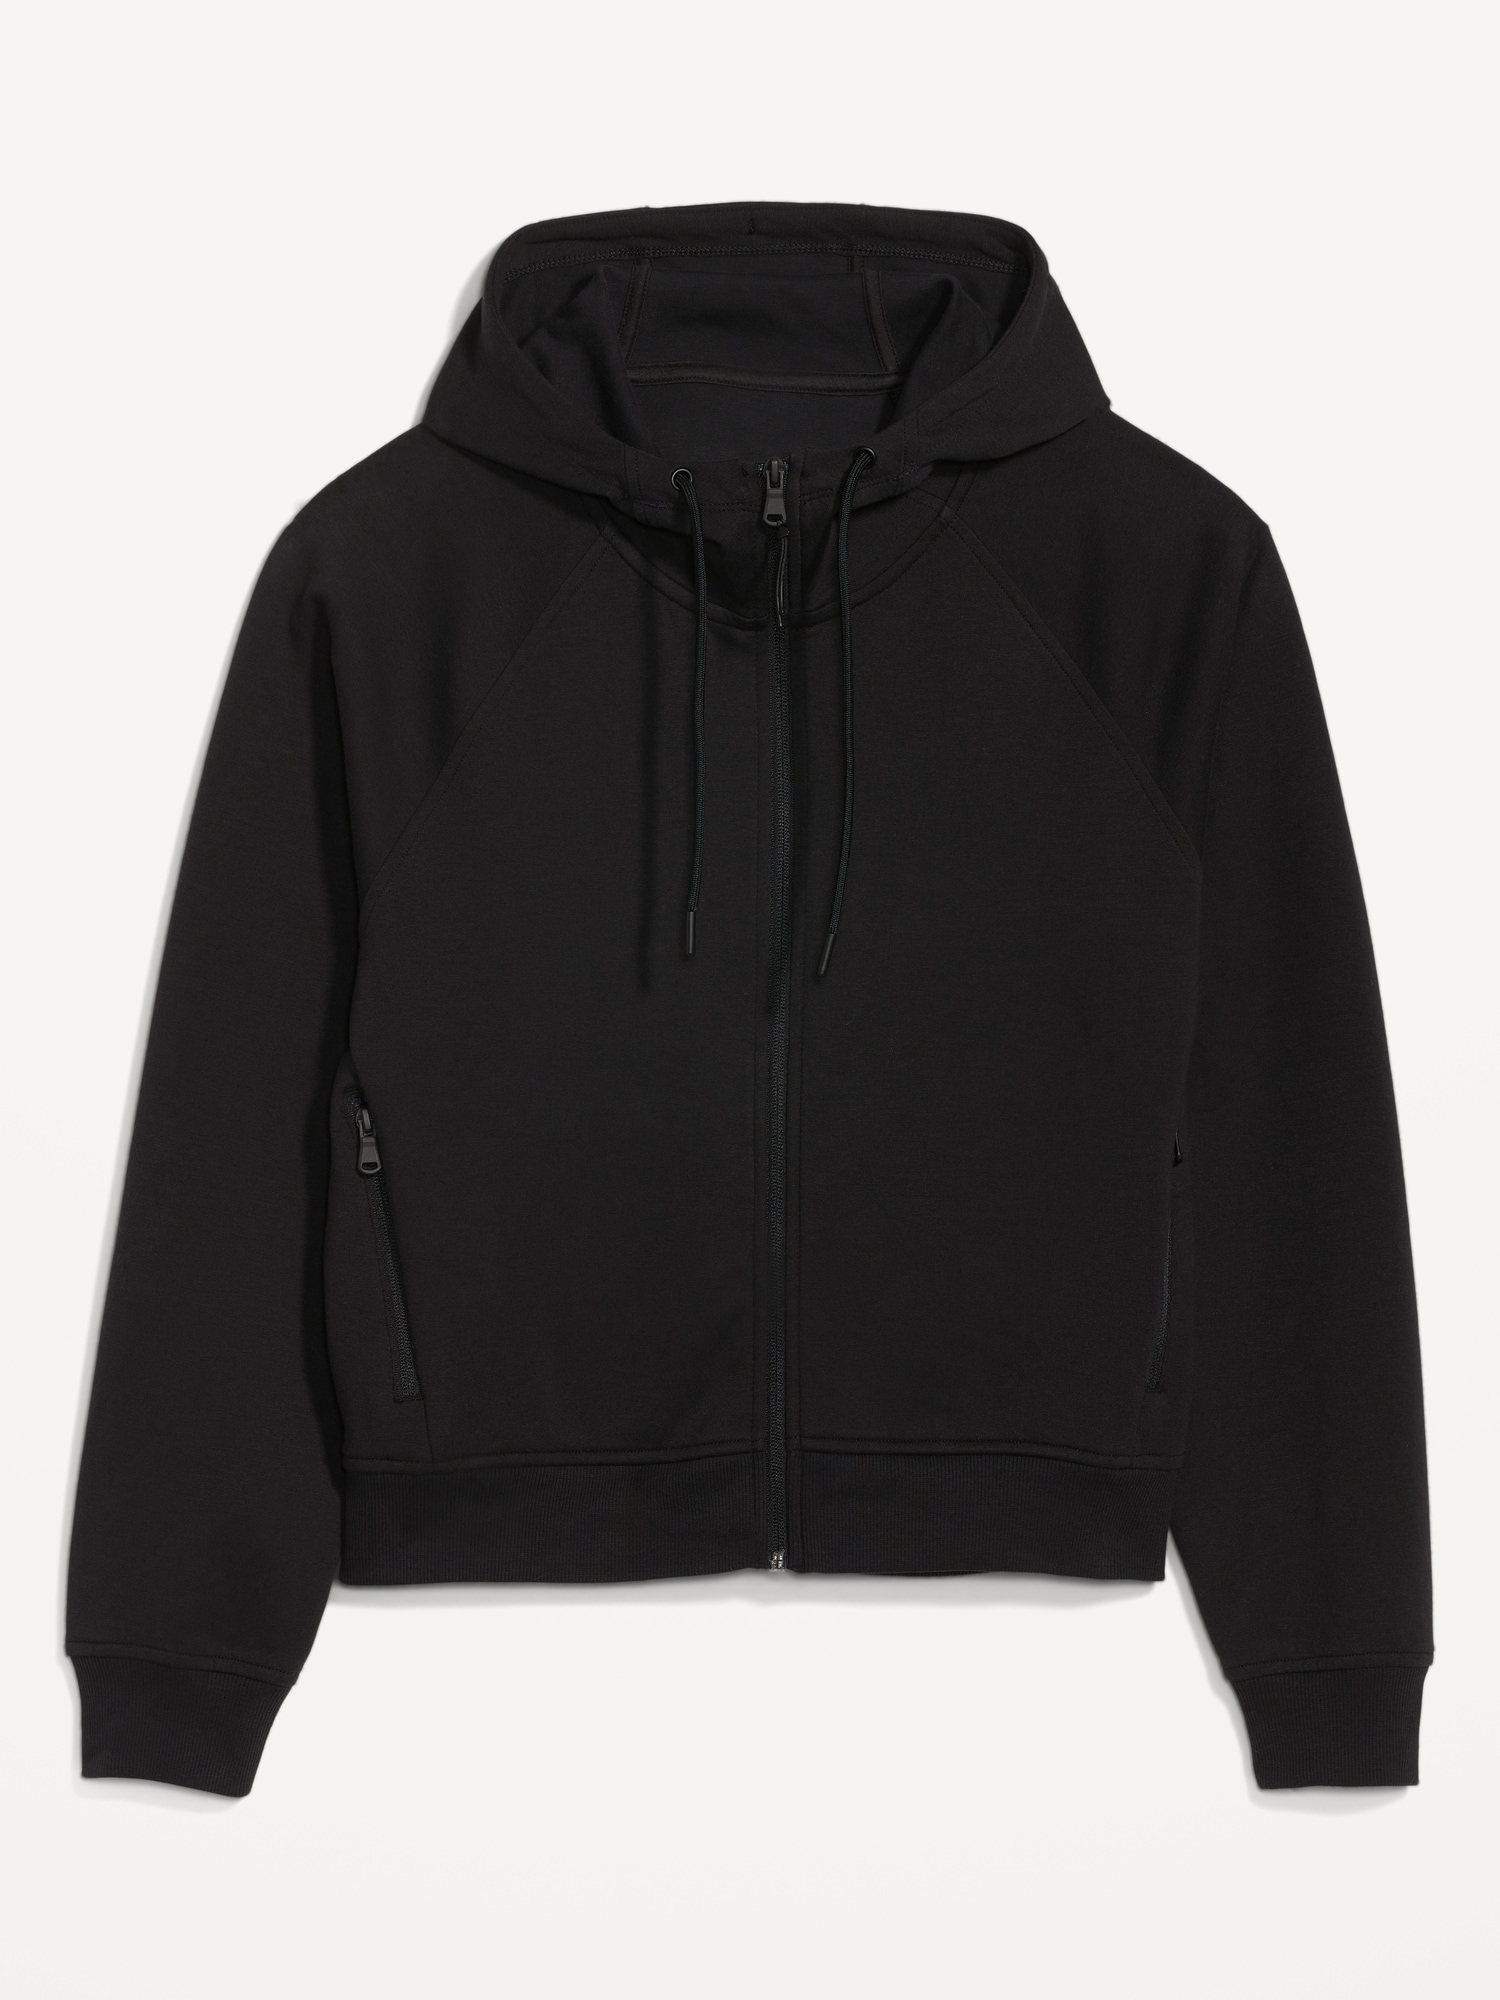 Zip Front Fleece Jacket-Cotton /Spandex Blend, Black, X-Large